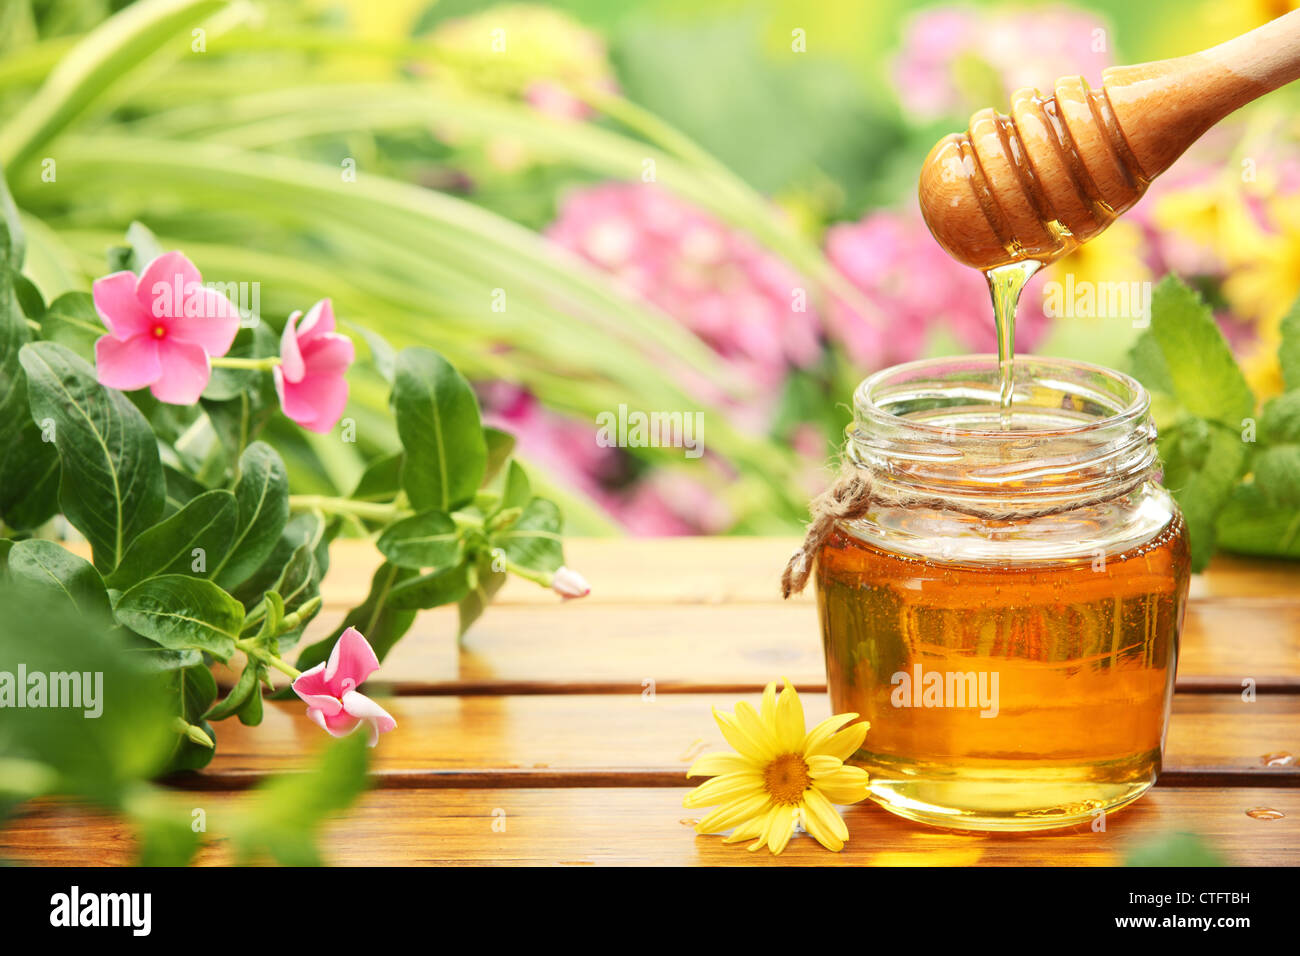 Le miel en pots de verre avec des fleurs. Banque D'Images